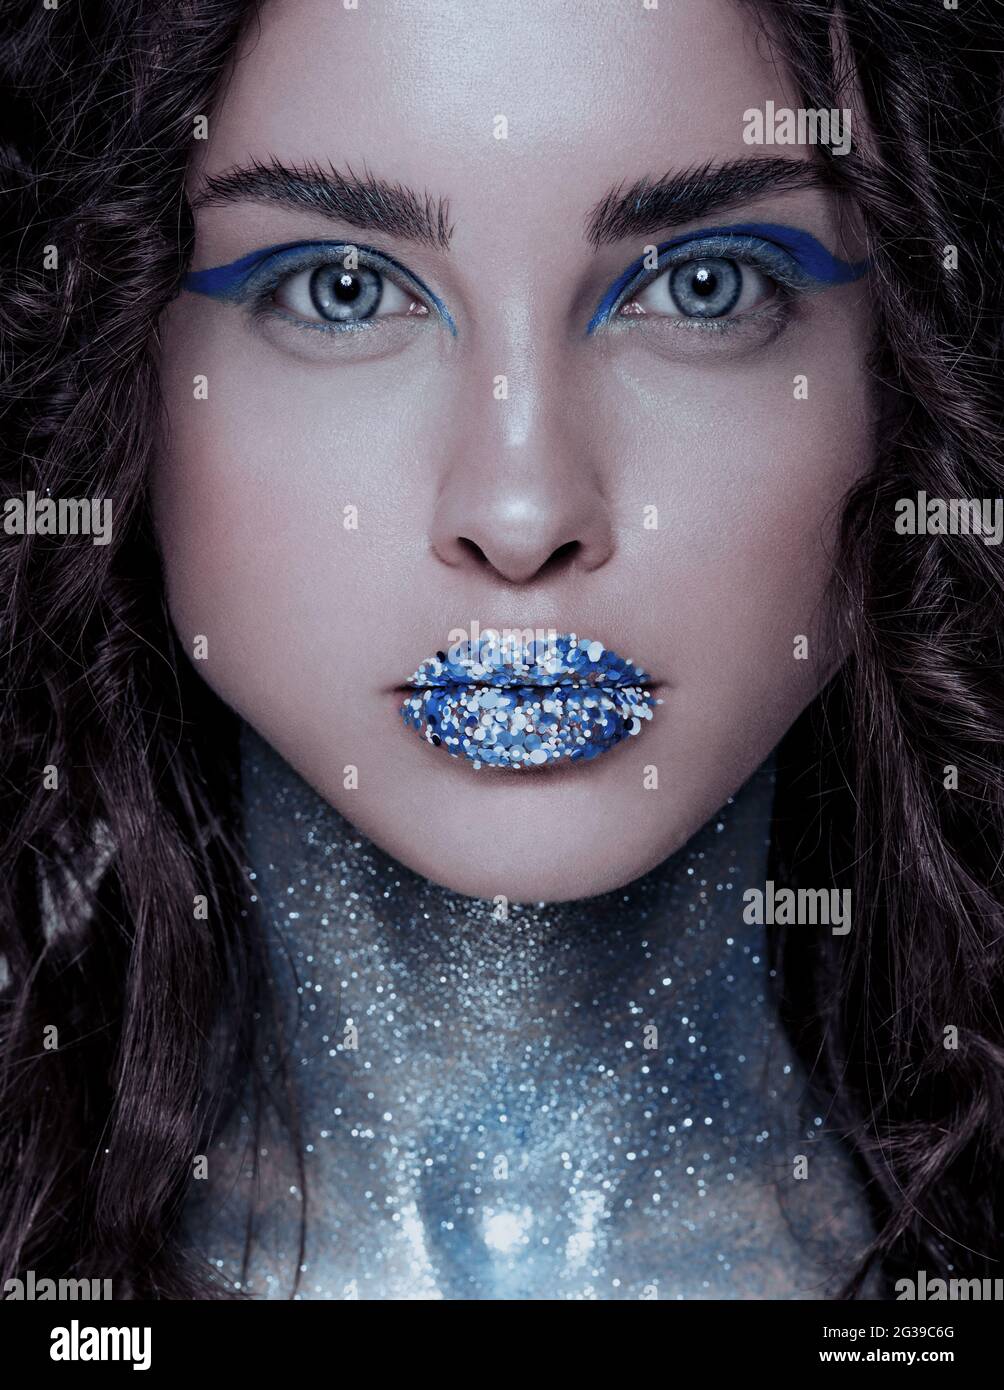 Schöne brünette Meerjungfrau Frau mit kreativen blau und Glitzer Make-up  und Schmuck auf ihrem nassen Haarstyled Kopf, buschige Augenbrauen  Stockfotografie - Alamy